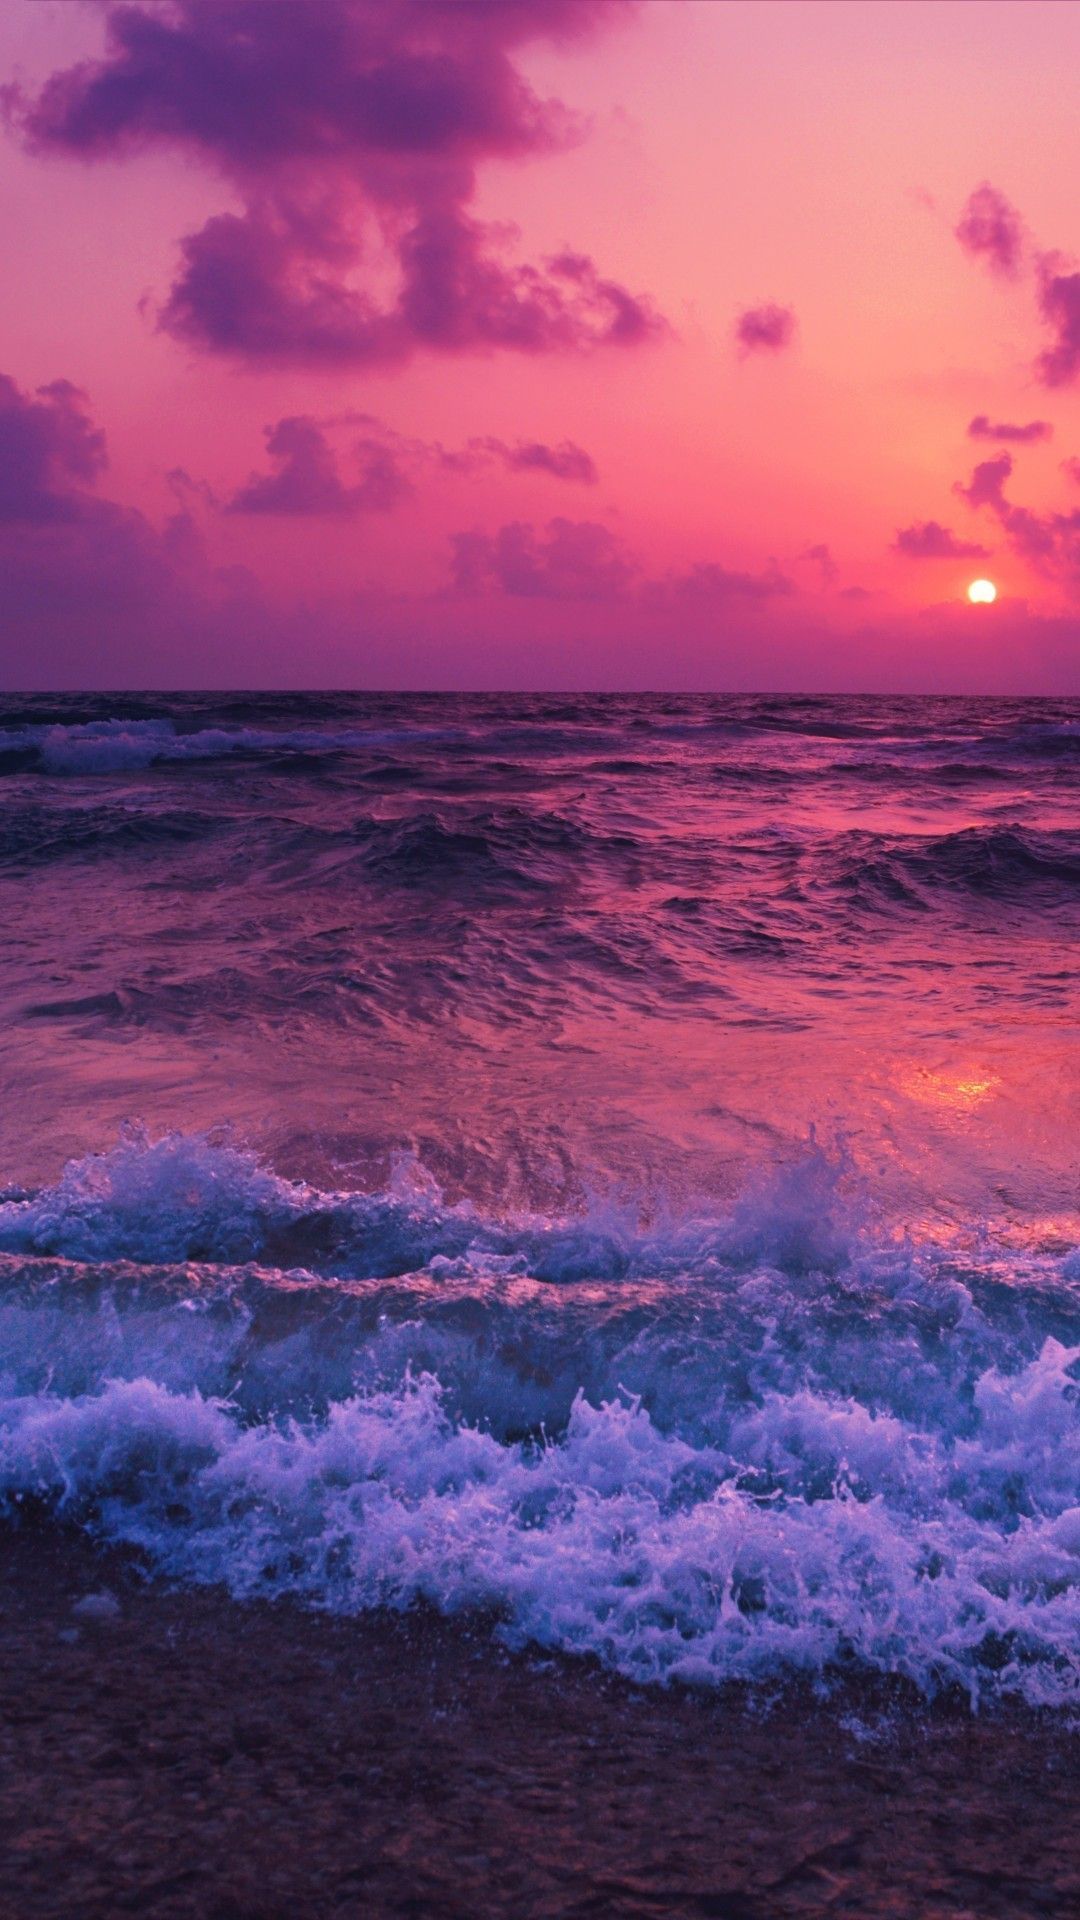 Ocean, Sunset, Waves, Foam, Beach. Sunset wallpaper, Sky